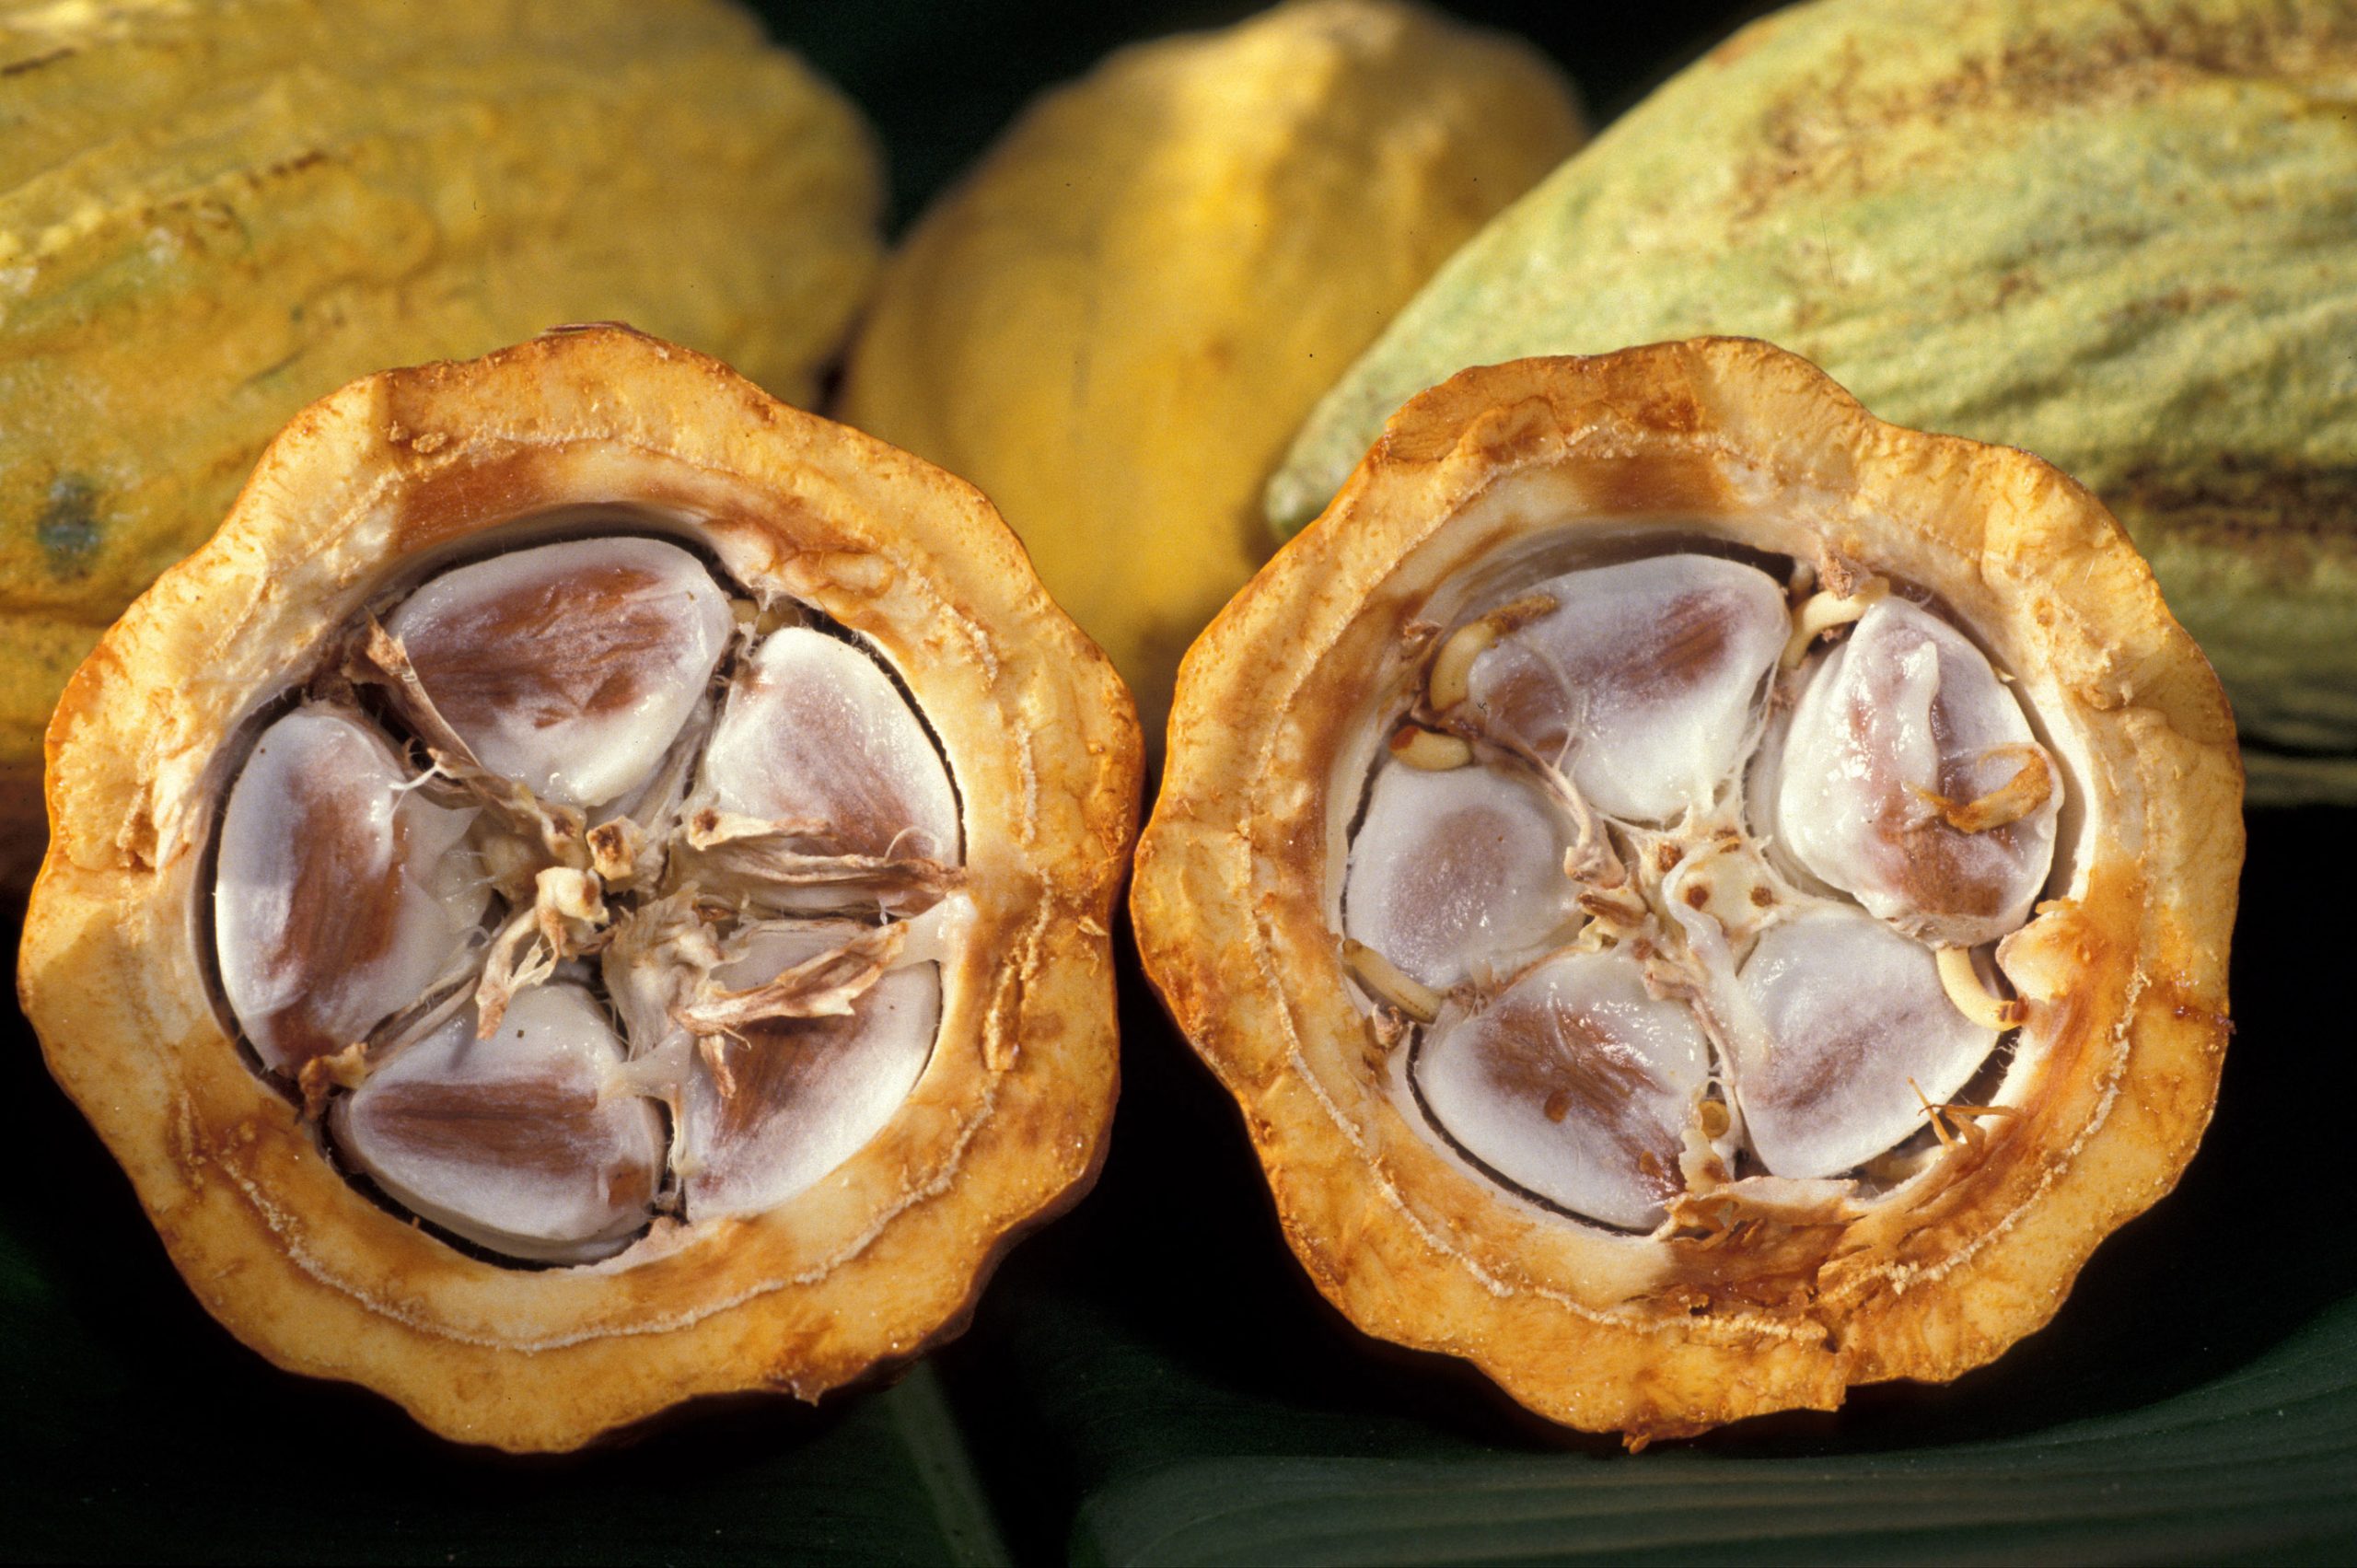 Tiến Sĩ Trồng Cây Cacao Trên Đất Dốc, Tạo Ra Socola Đắt Nhất Việt Nam